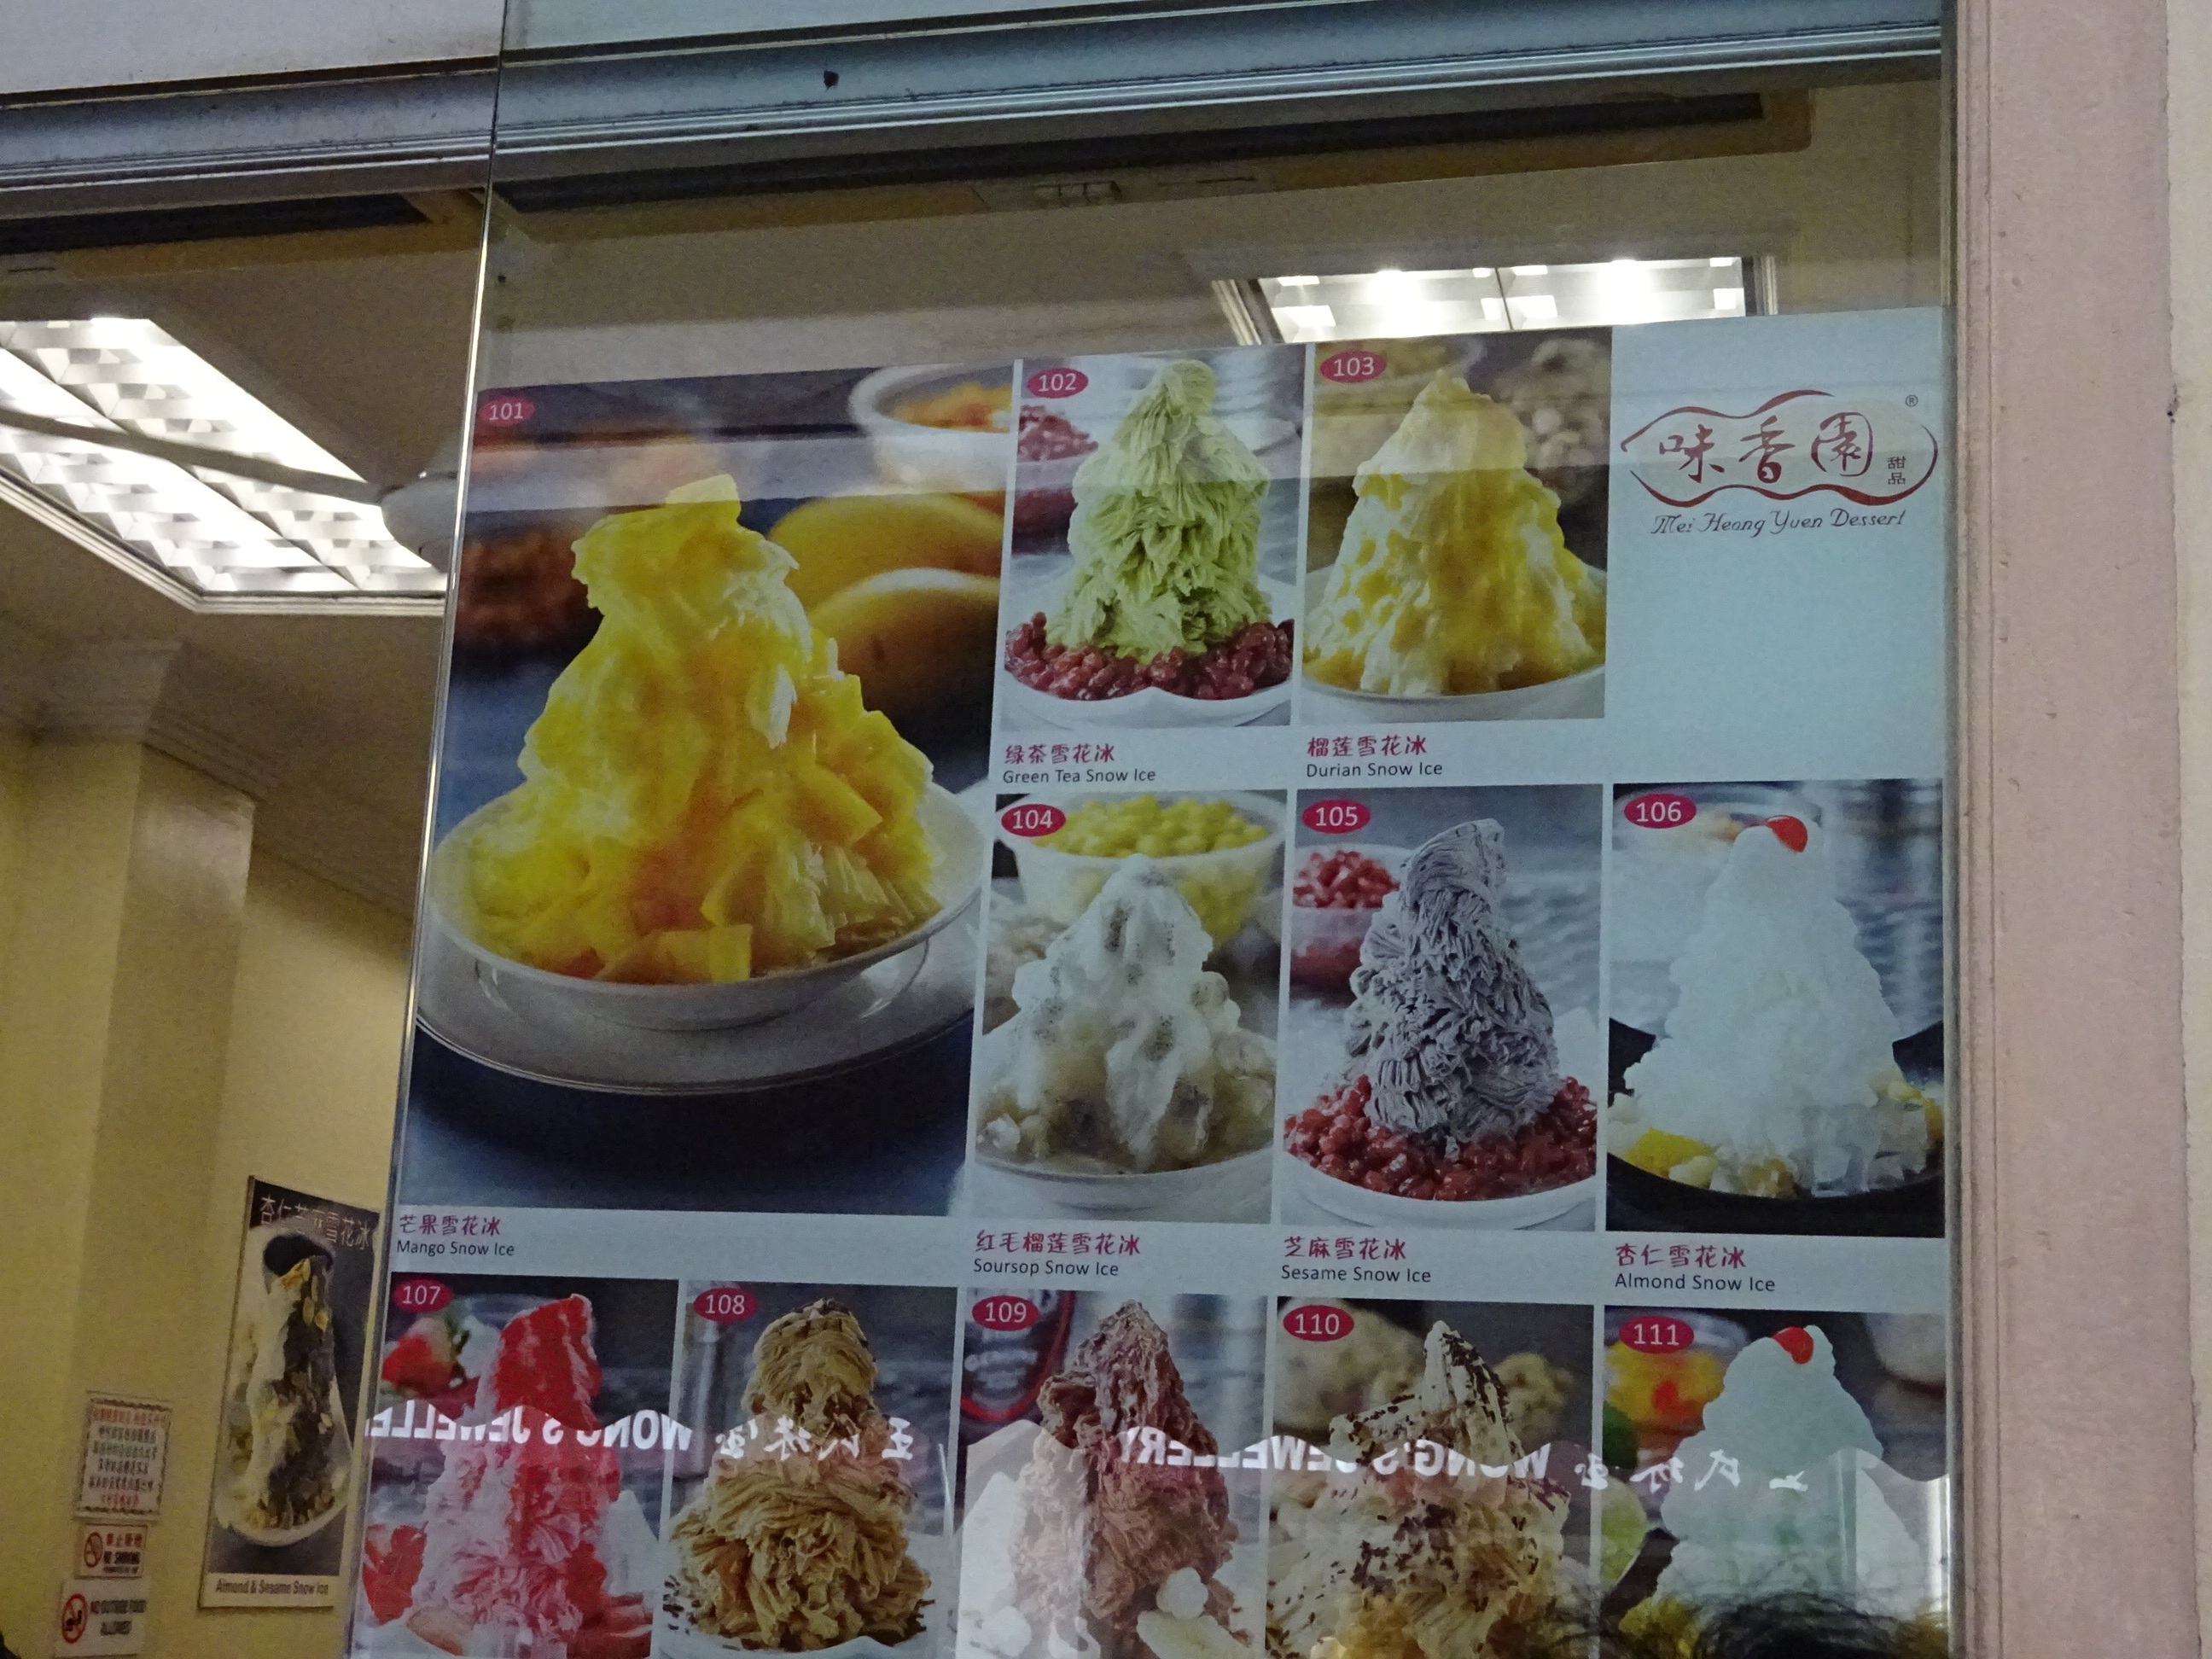 インスタ映えするかき氷があるシンガポールの人気スイーツ店「味香園甜品(Mei Heong Yuen Dessert)」